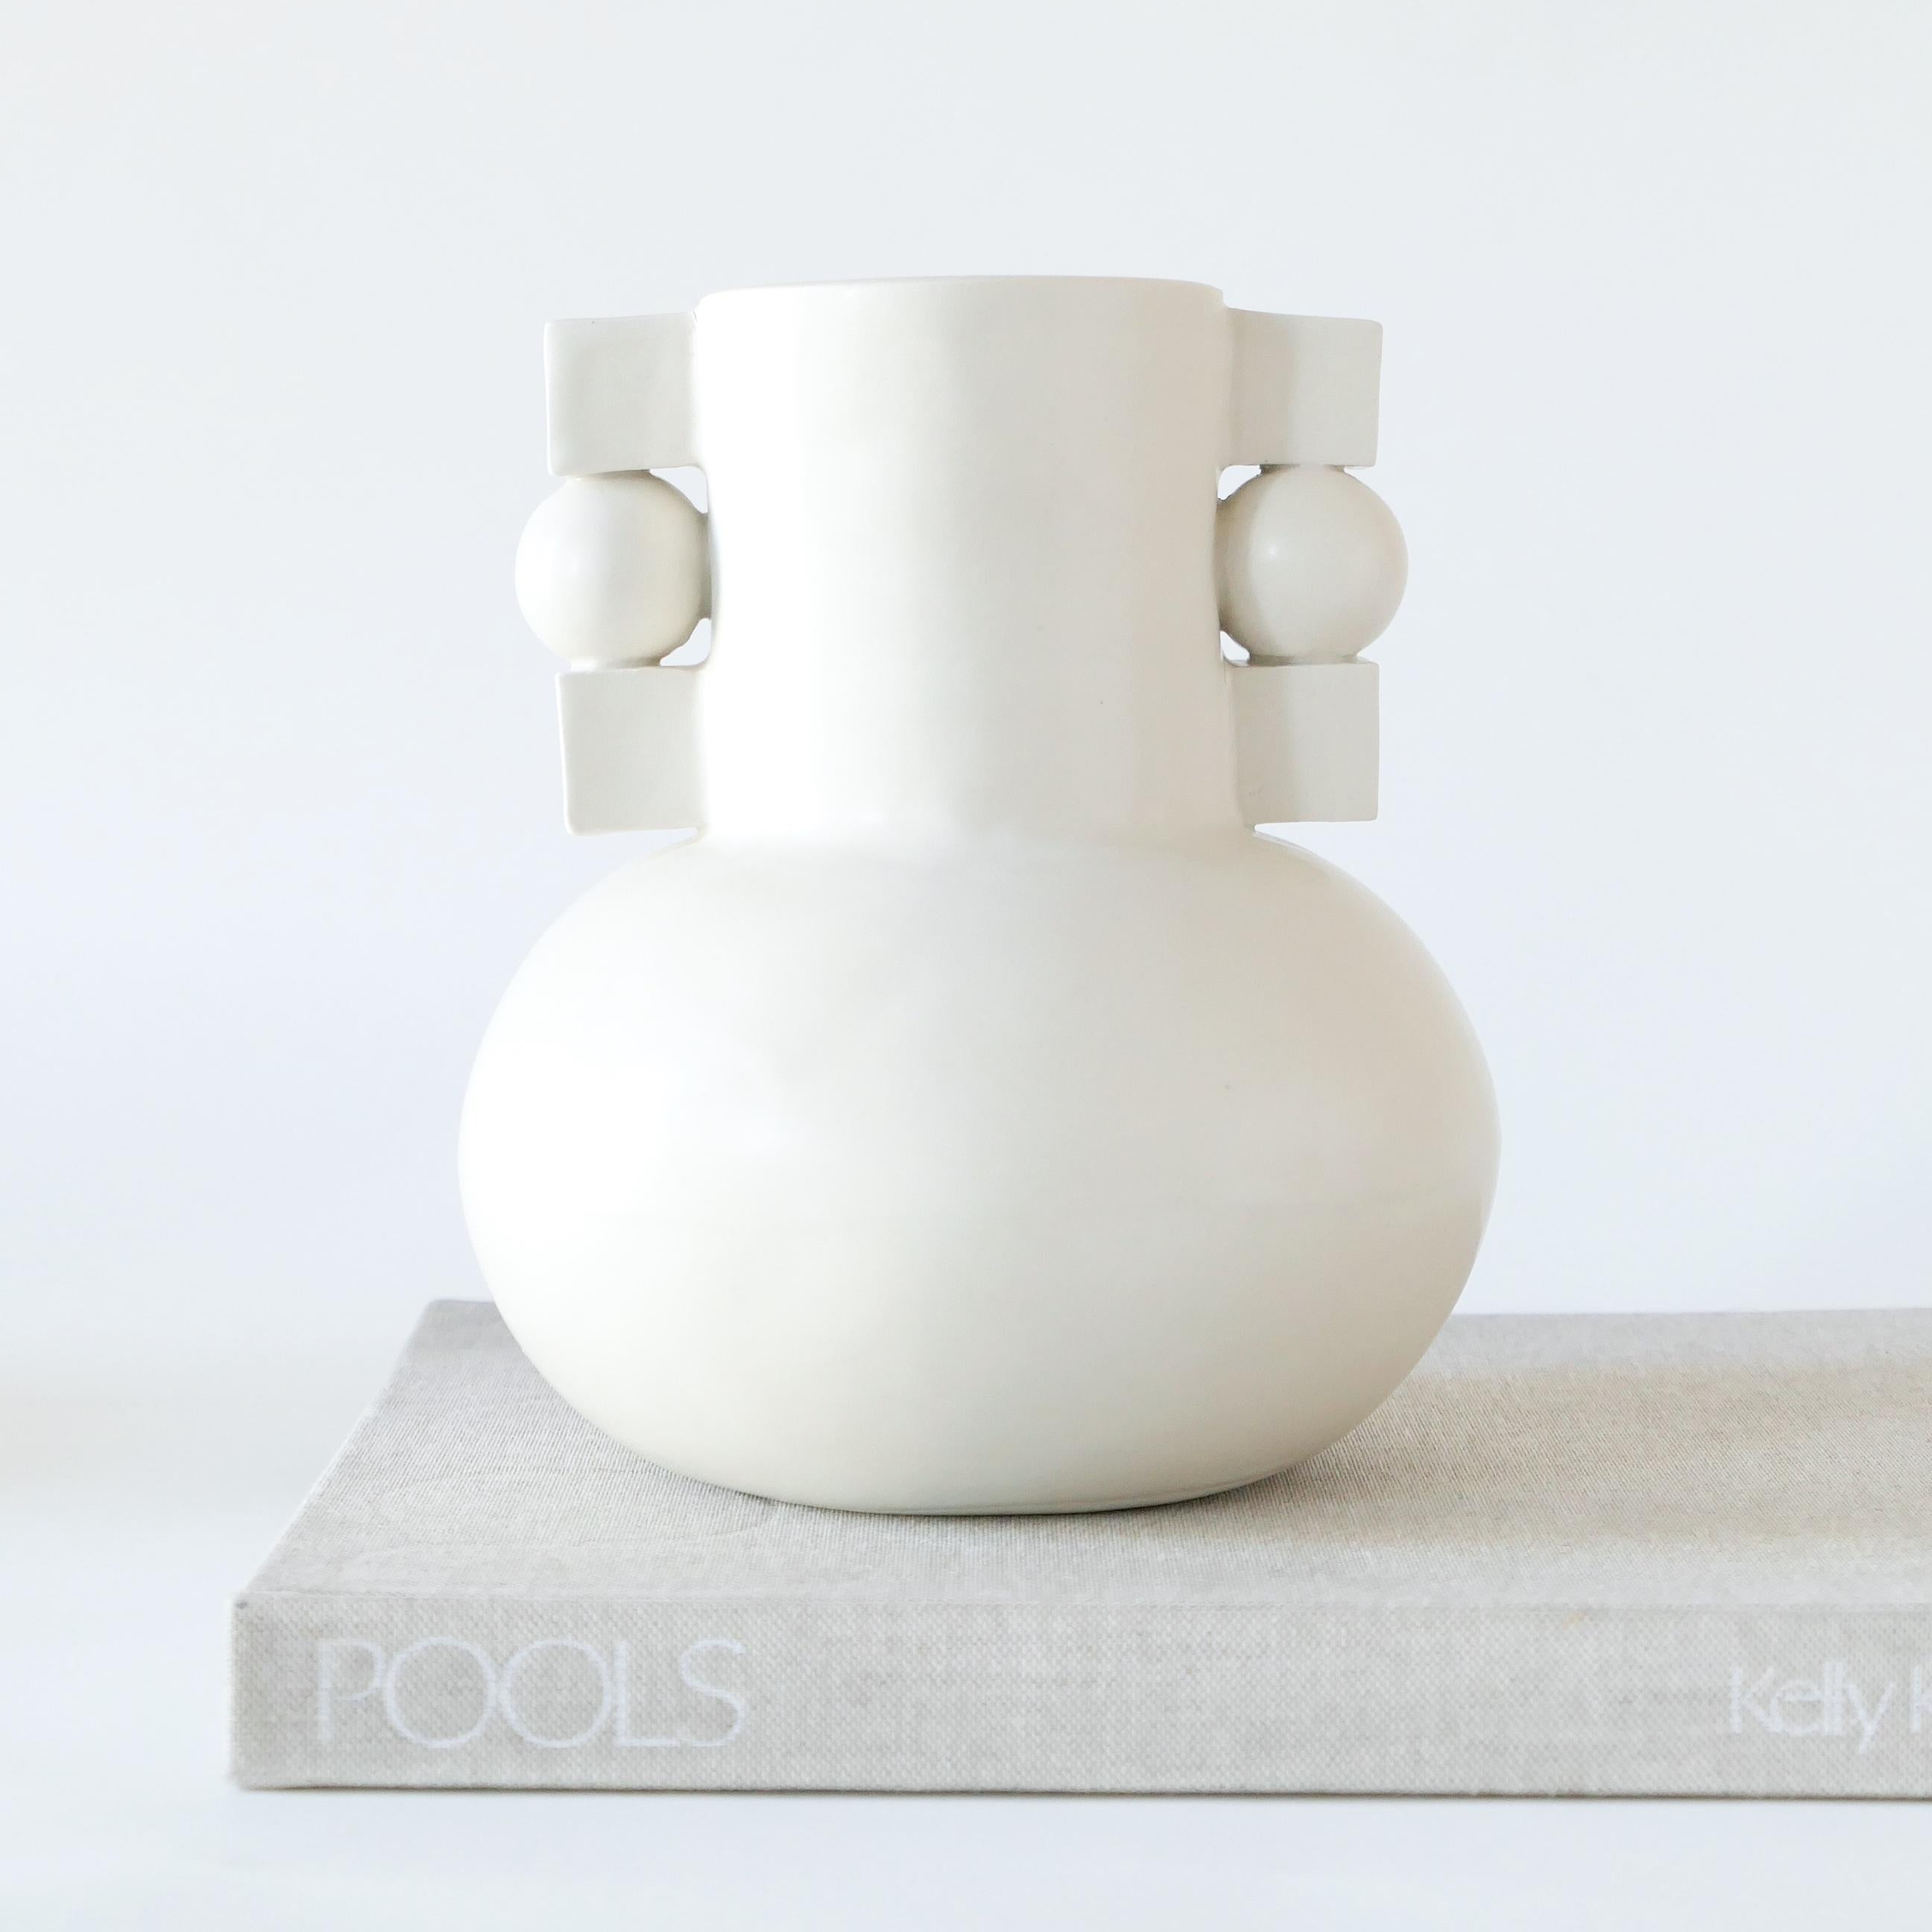 Vase en grès blanc d'inspiration Bauhaus, recouvert d'une glaçure douce et transparente. 

Karina Vieira est une céramiste basée à Brooklyn qui se consacre à la fabrication de récipients à la main. 

Son travail fait référence à différents